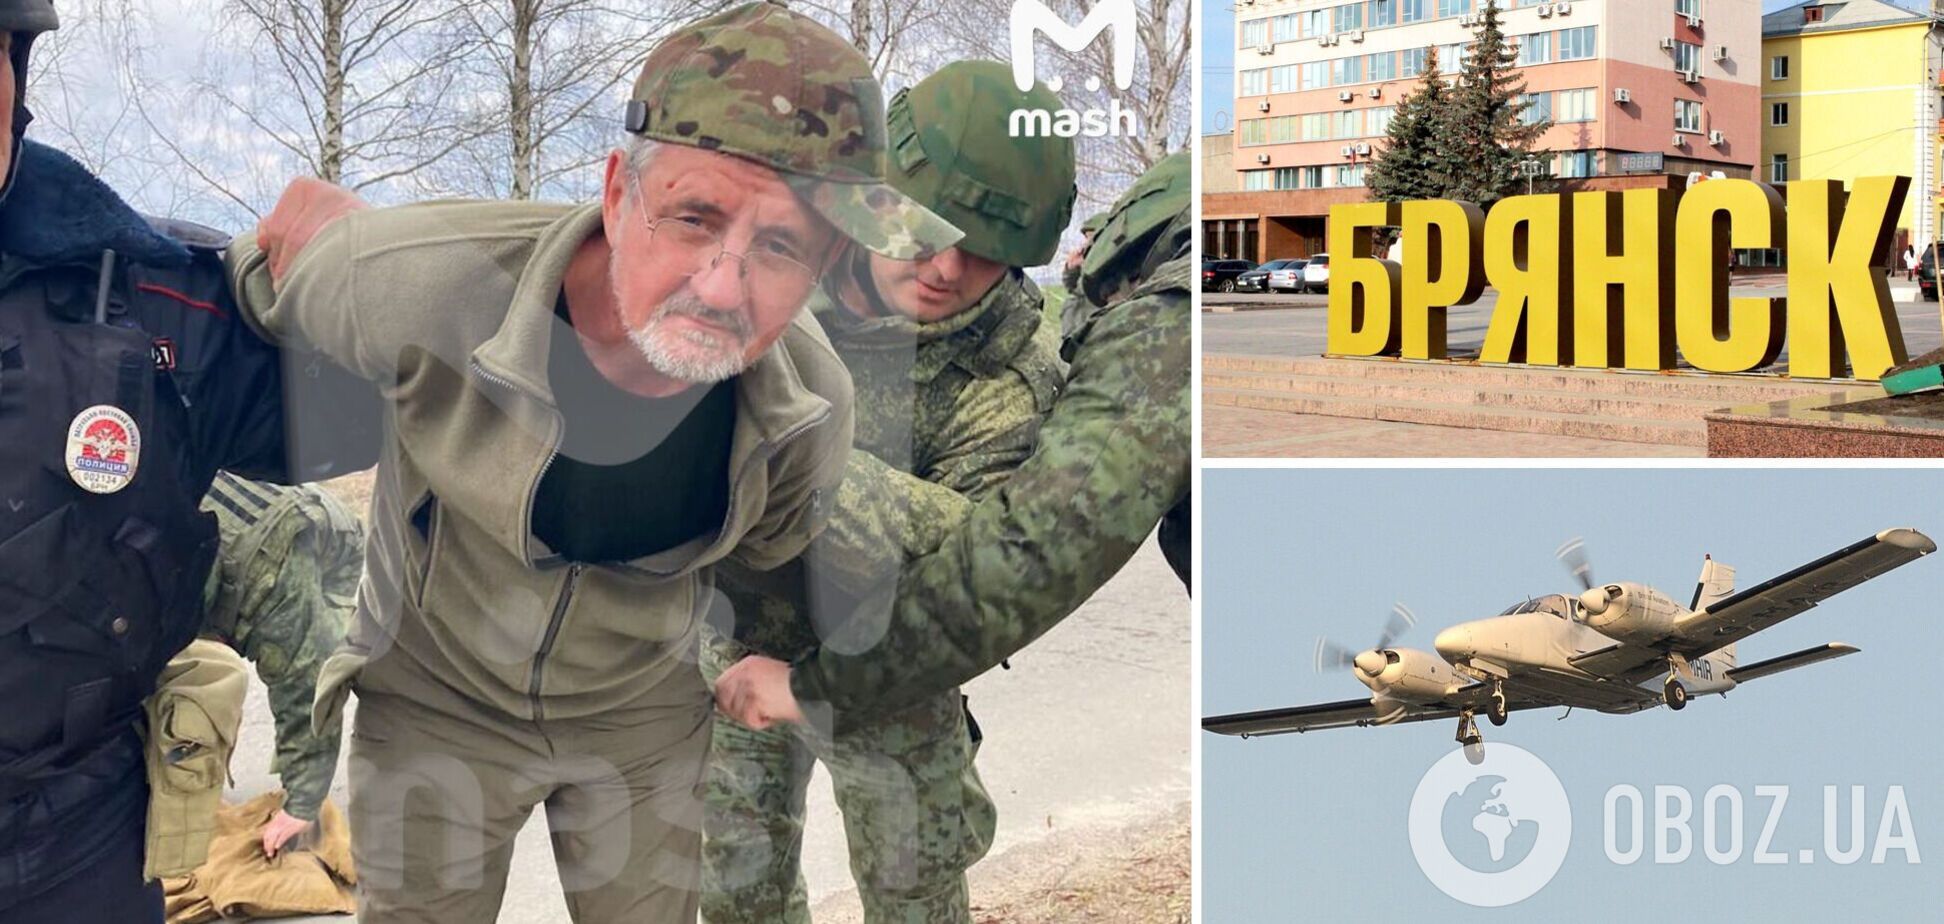 В России задержали 'пилота украинского самолета': по легенде ФСБ, проверял средства ПВО. Фото и видео